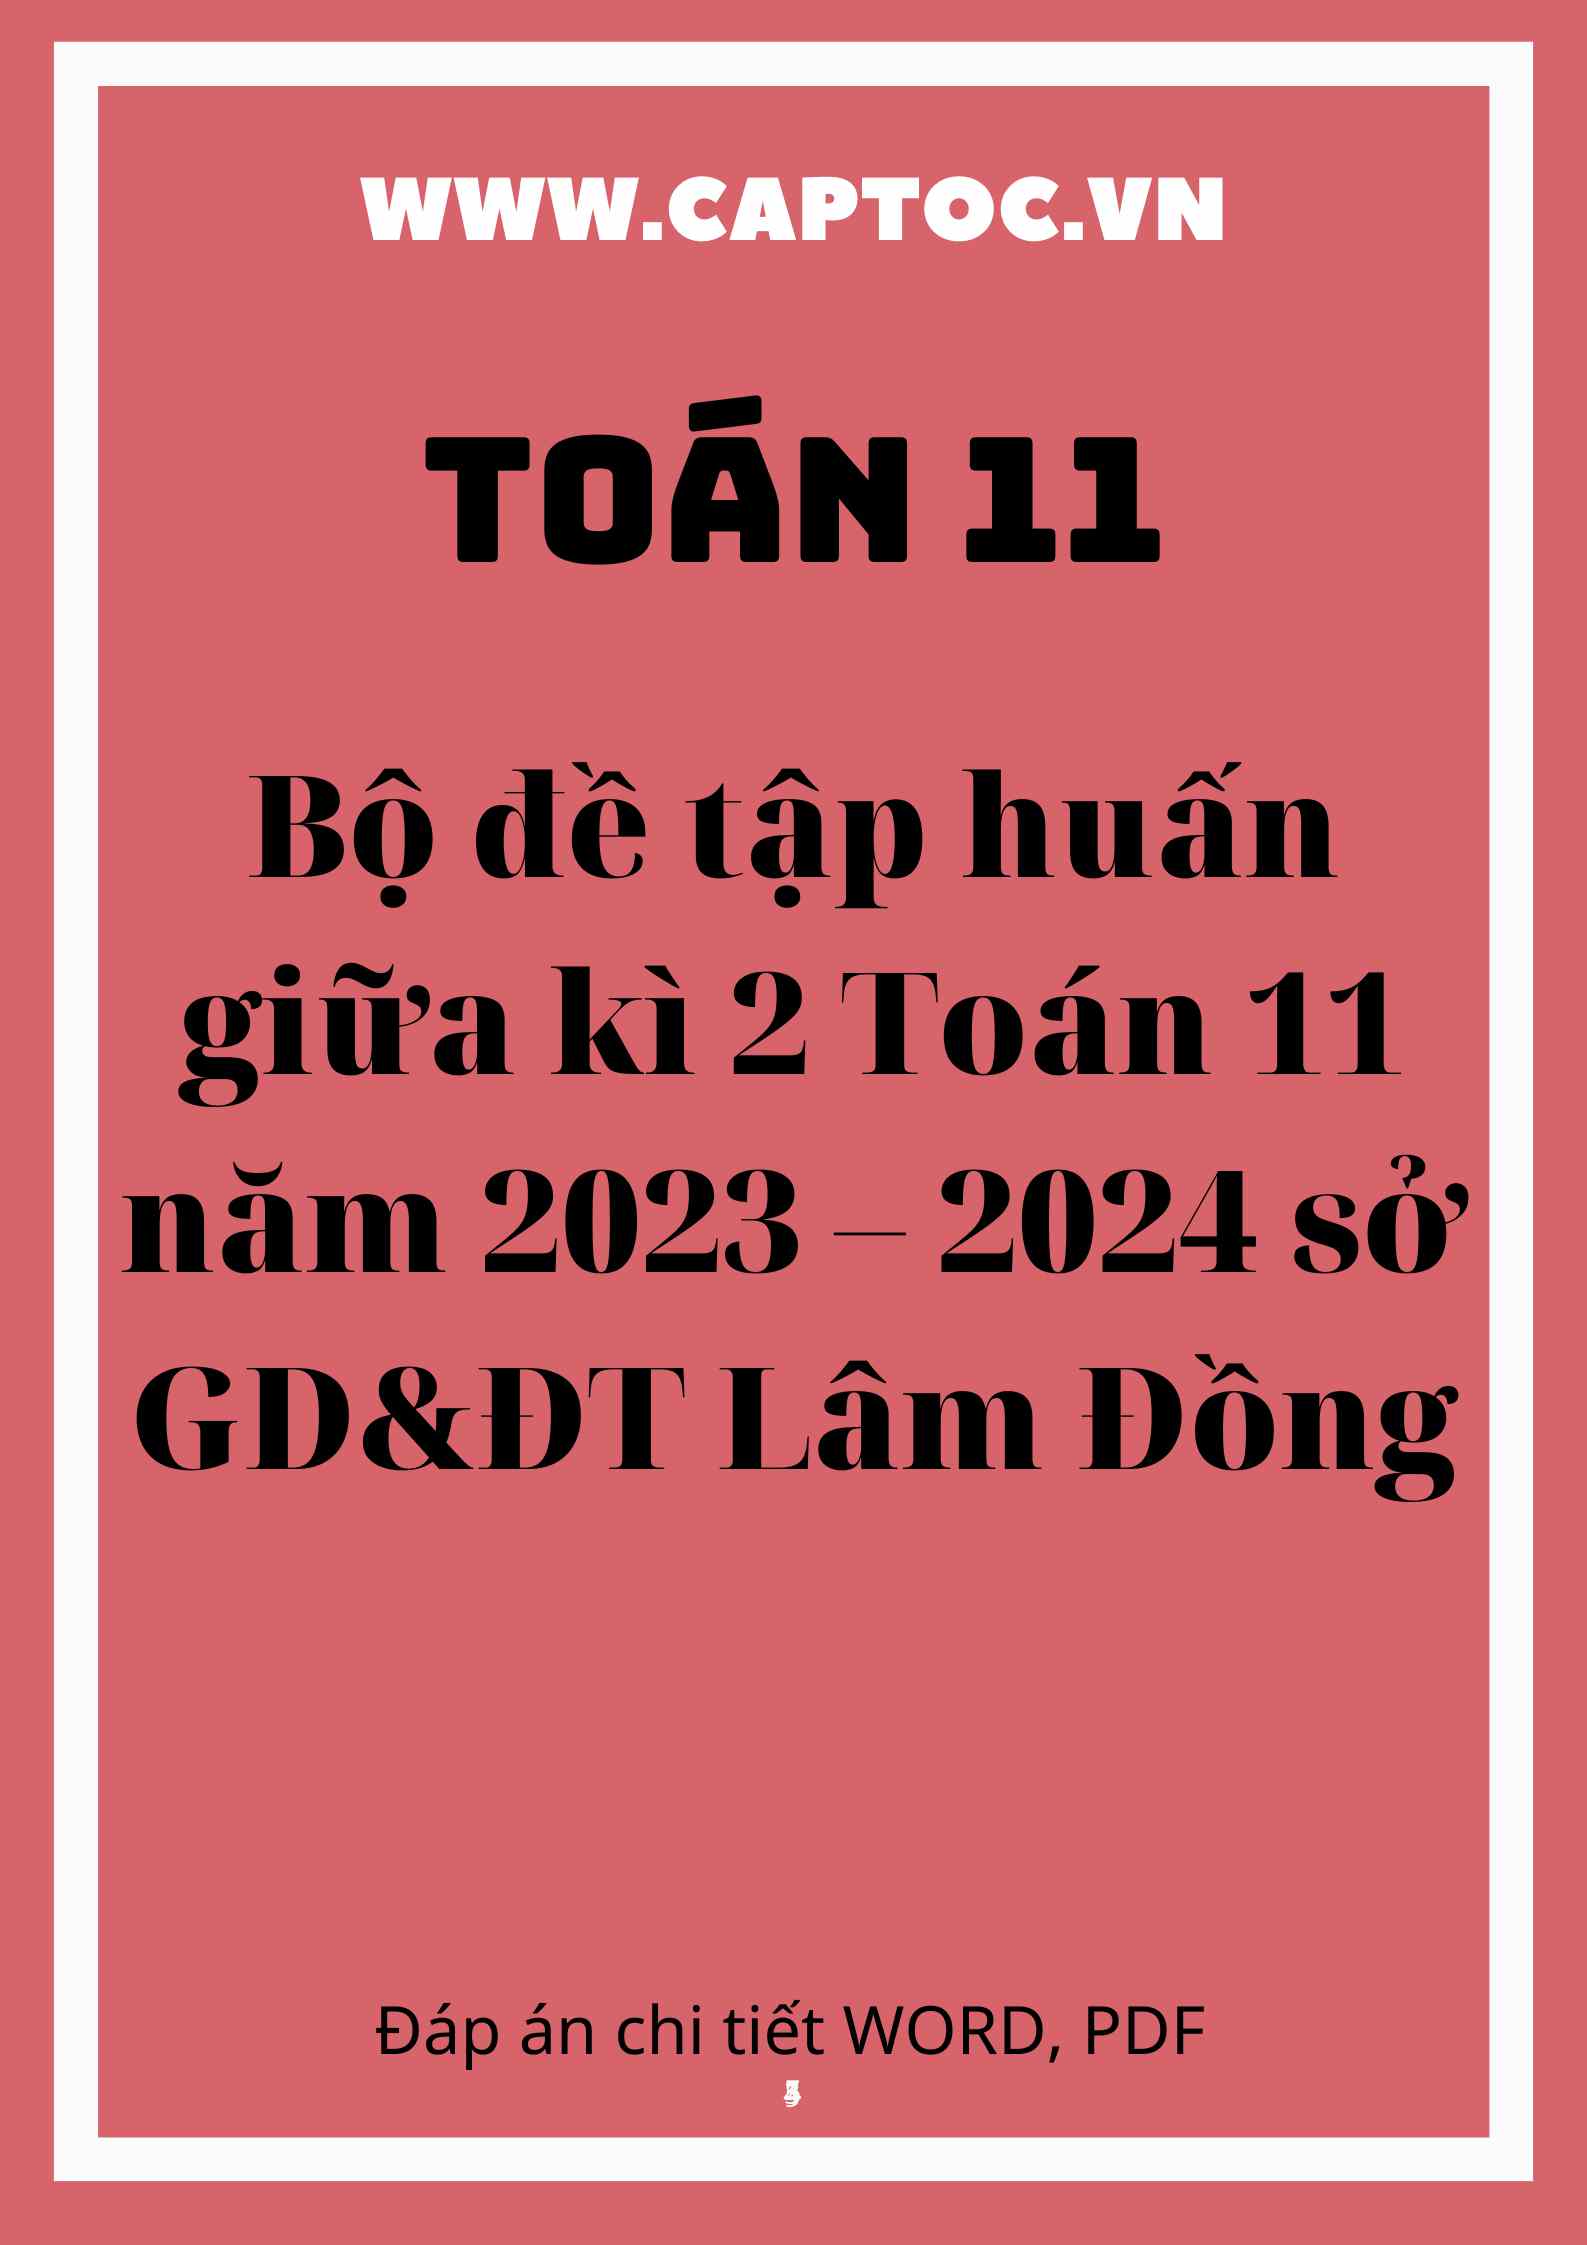 Bộ đề tập huấn giữa kì 2 Toán 11 năm 2023 – 2024 sở GD&ĐT Lâm Đồng